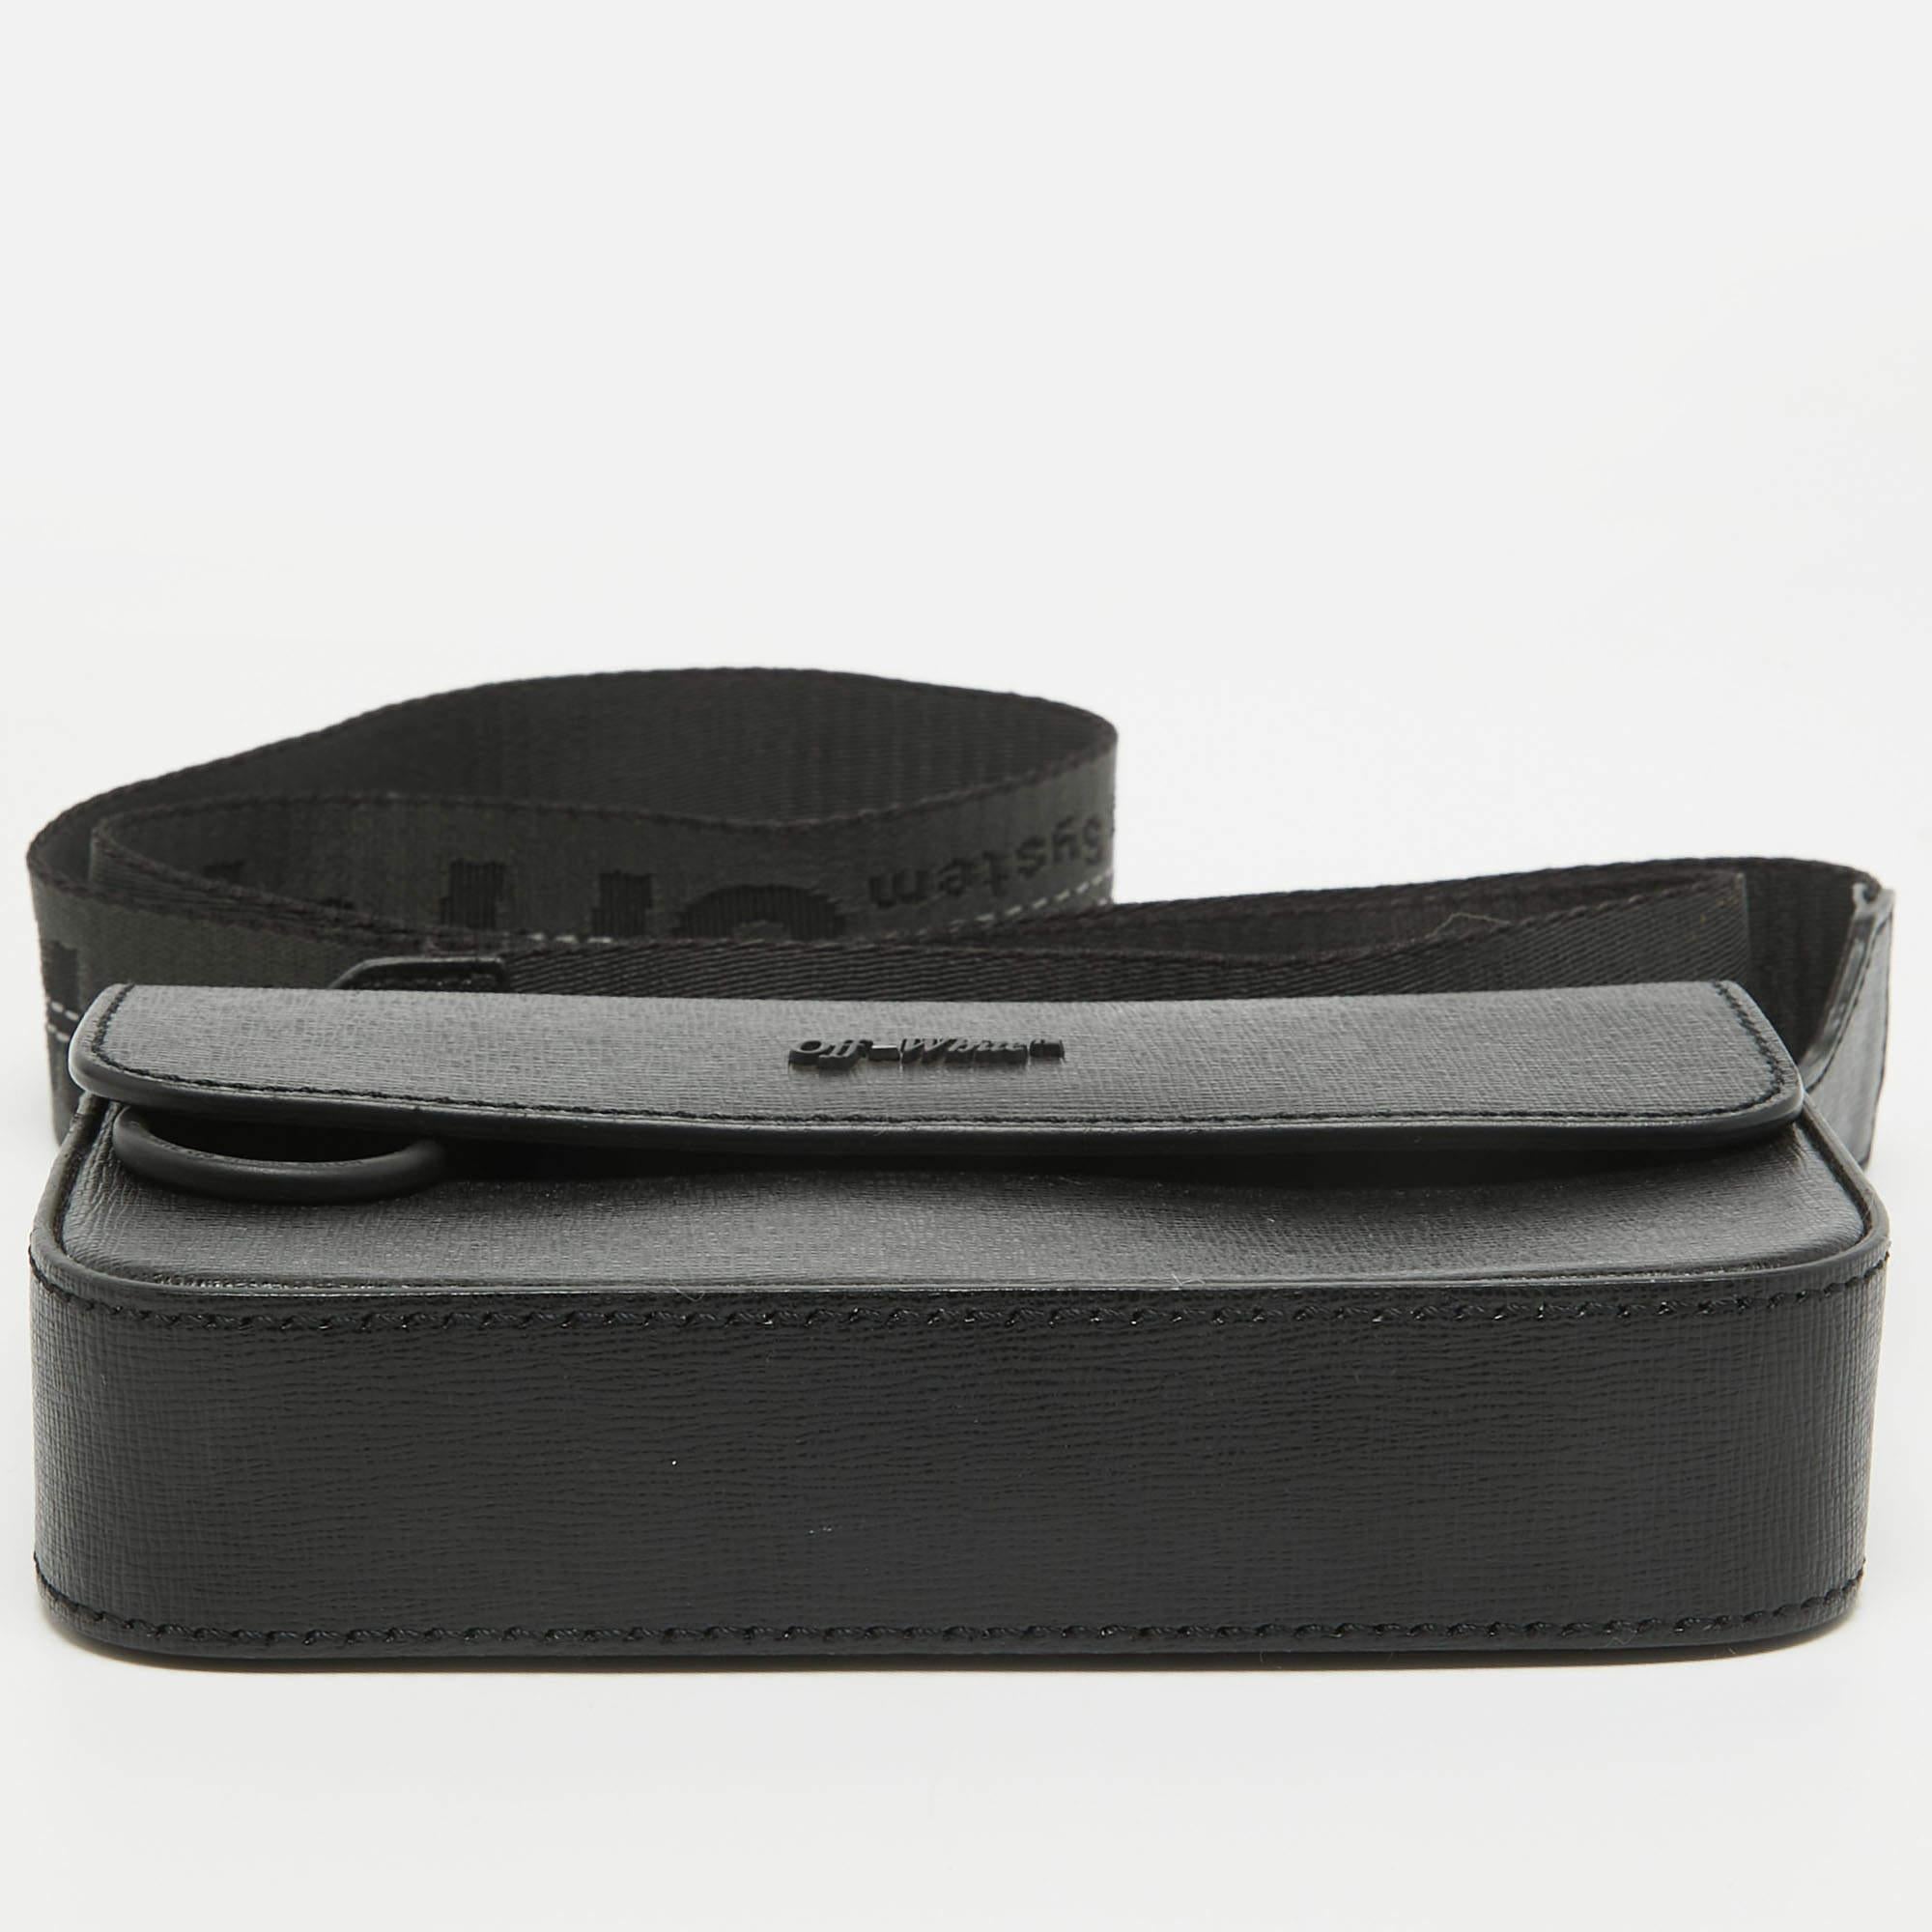 Off-White Black Leather Mini Flap Crossbody Bag In Good Condition For Sale In Dubai, Al Qouz 2